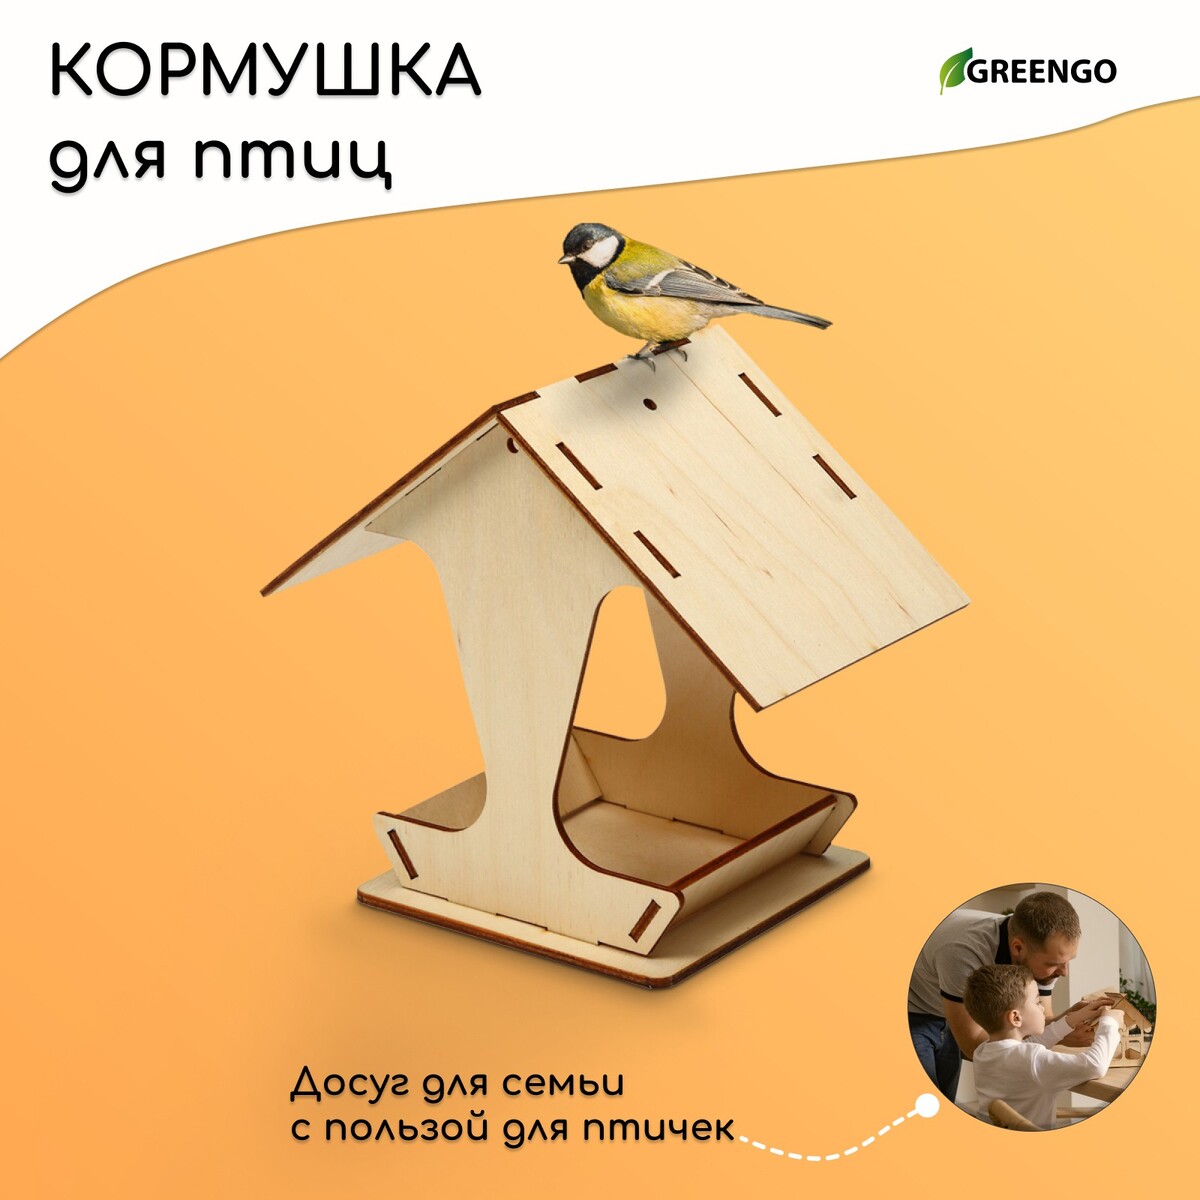 Kopмушка для птиц, 17 × 10,5 × 15,5 см, greengo kopмушка для птиц 17 × 10 5 × 15 5 см greengo